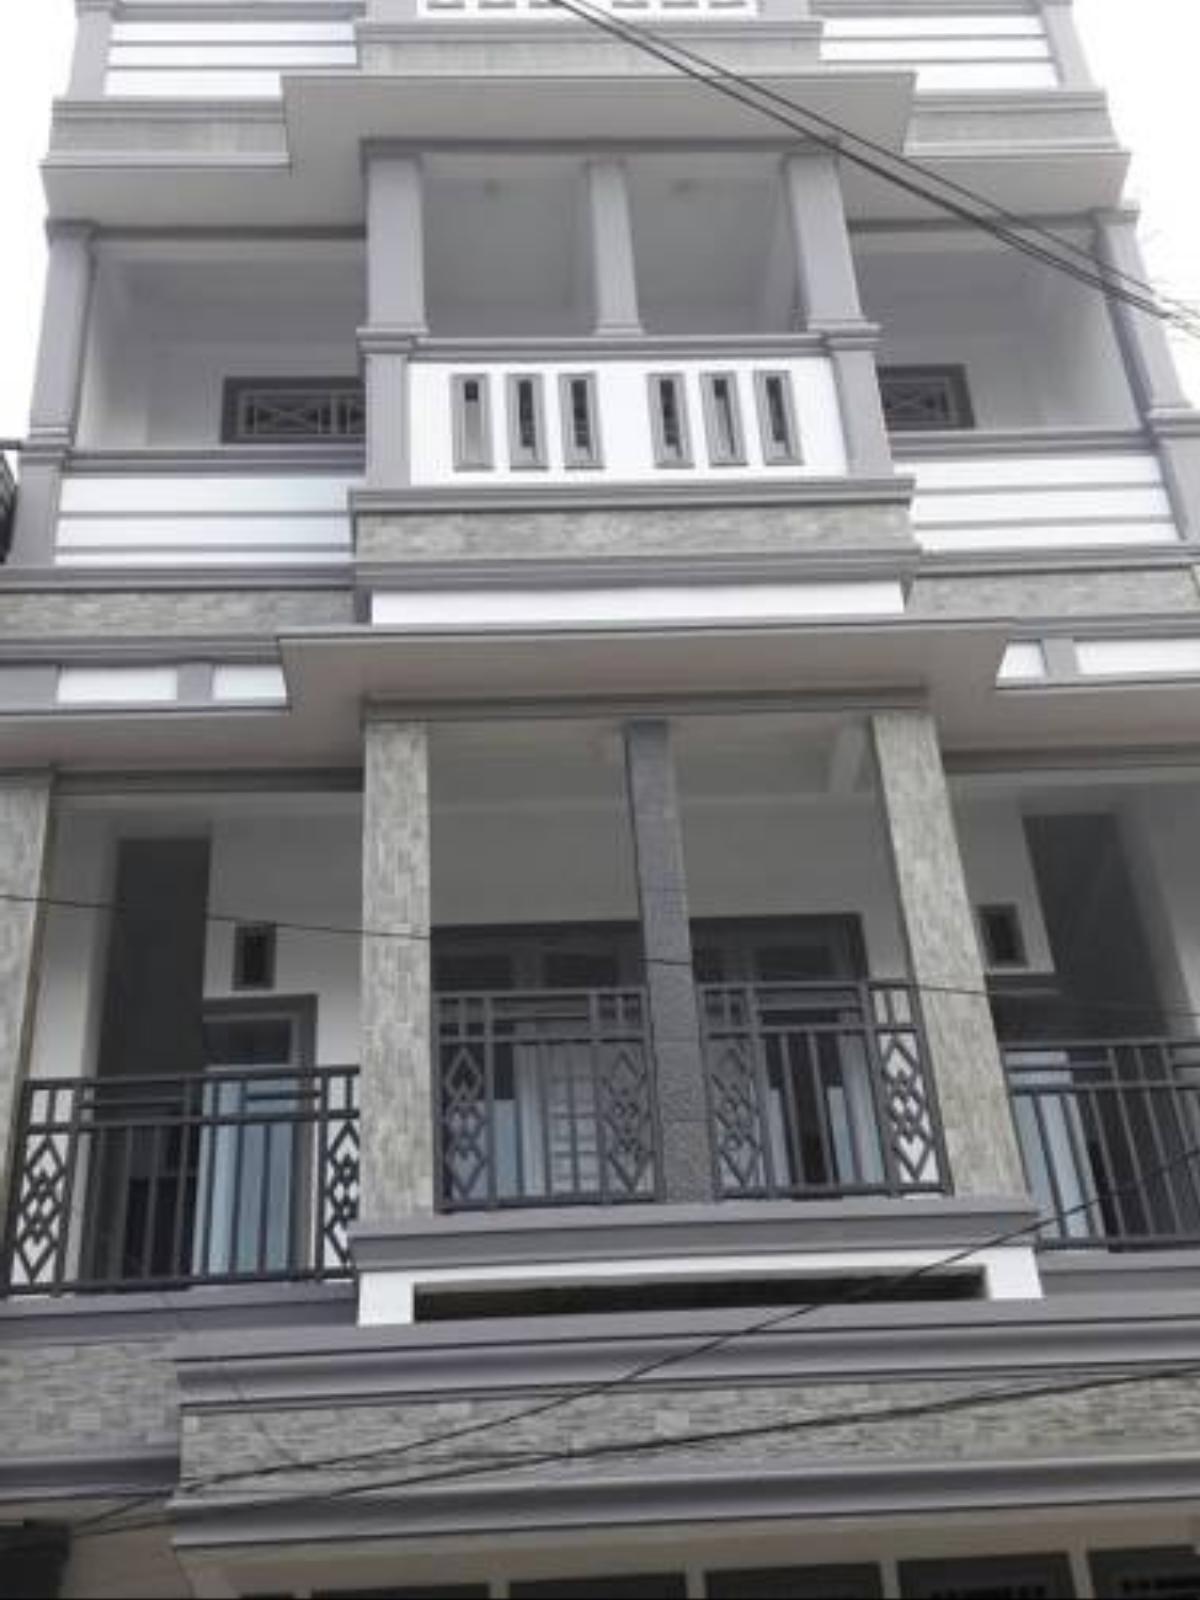 The Royal Residence Hotel Lhokseumawe Indonesia